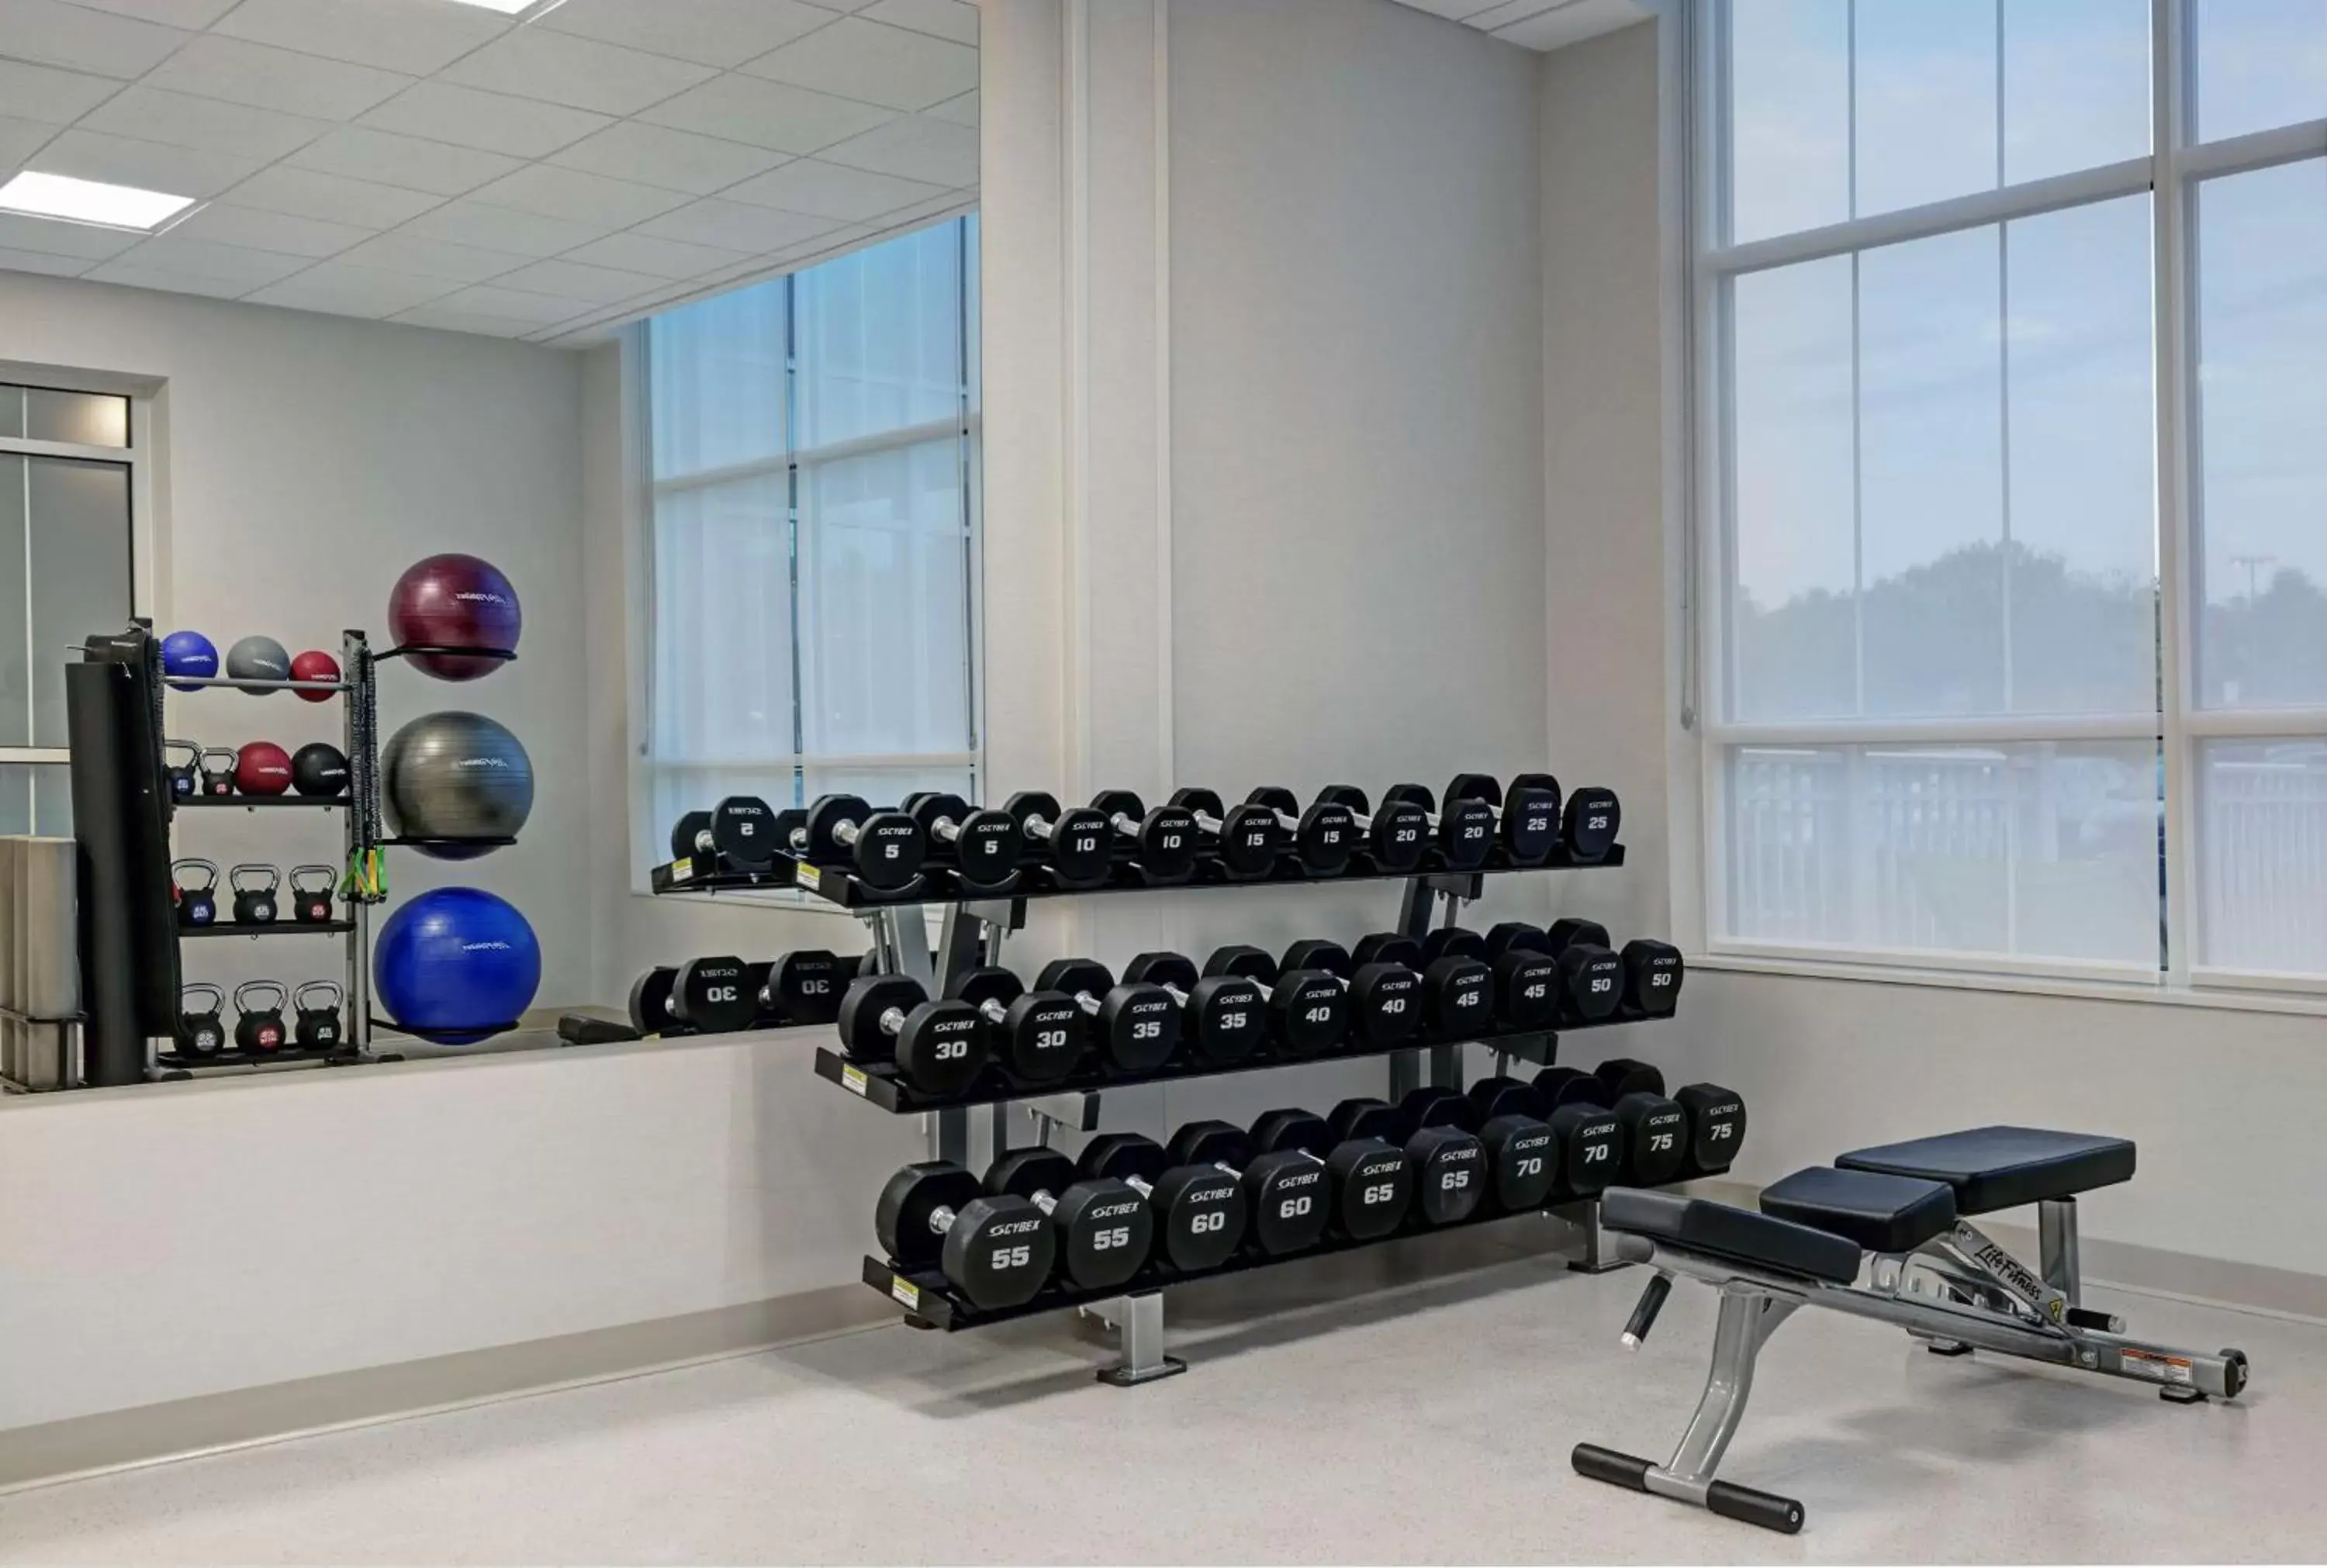 Fitness centre/facilities, Fitness Center/Facilities in Hilton Garden Inn Manassas